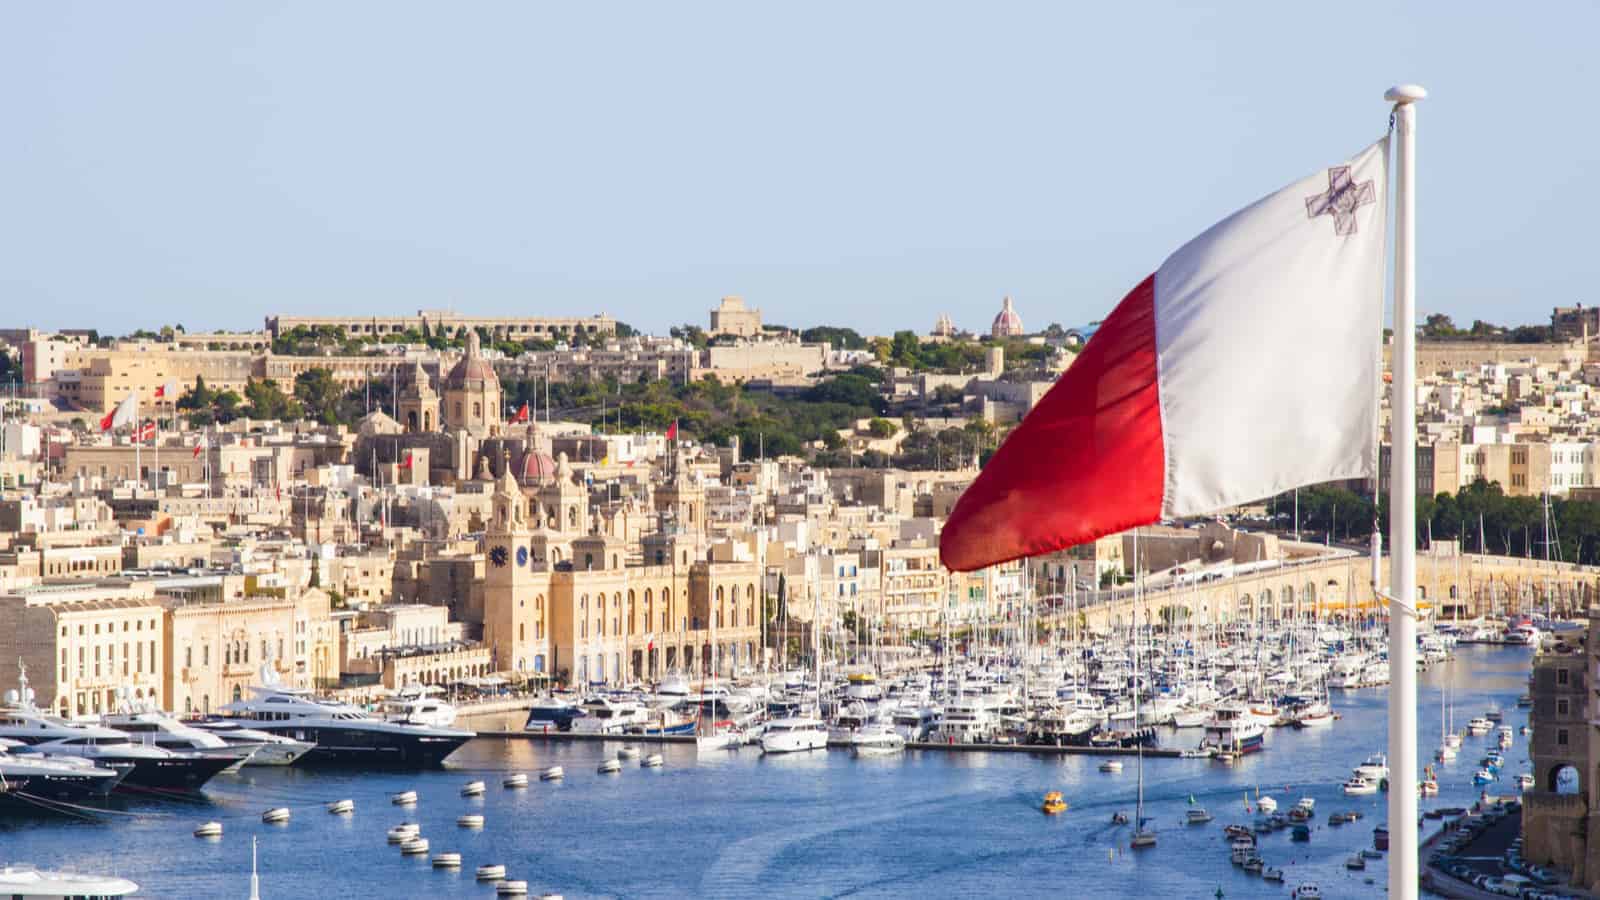 Malta To Become “The Blockchain Island”